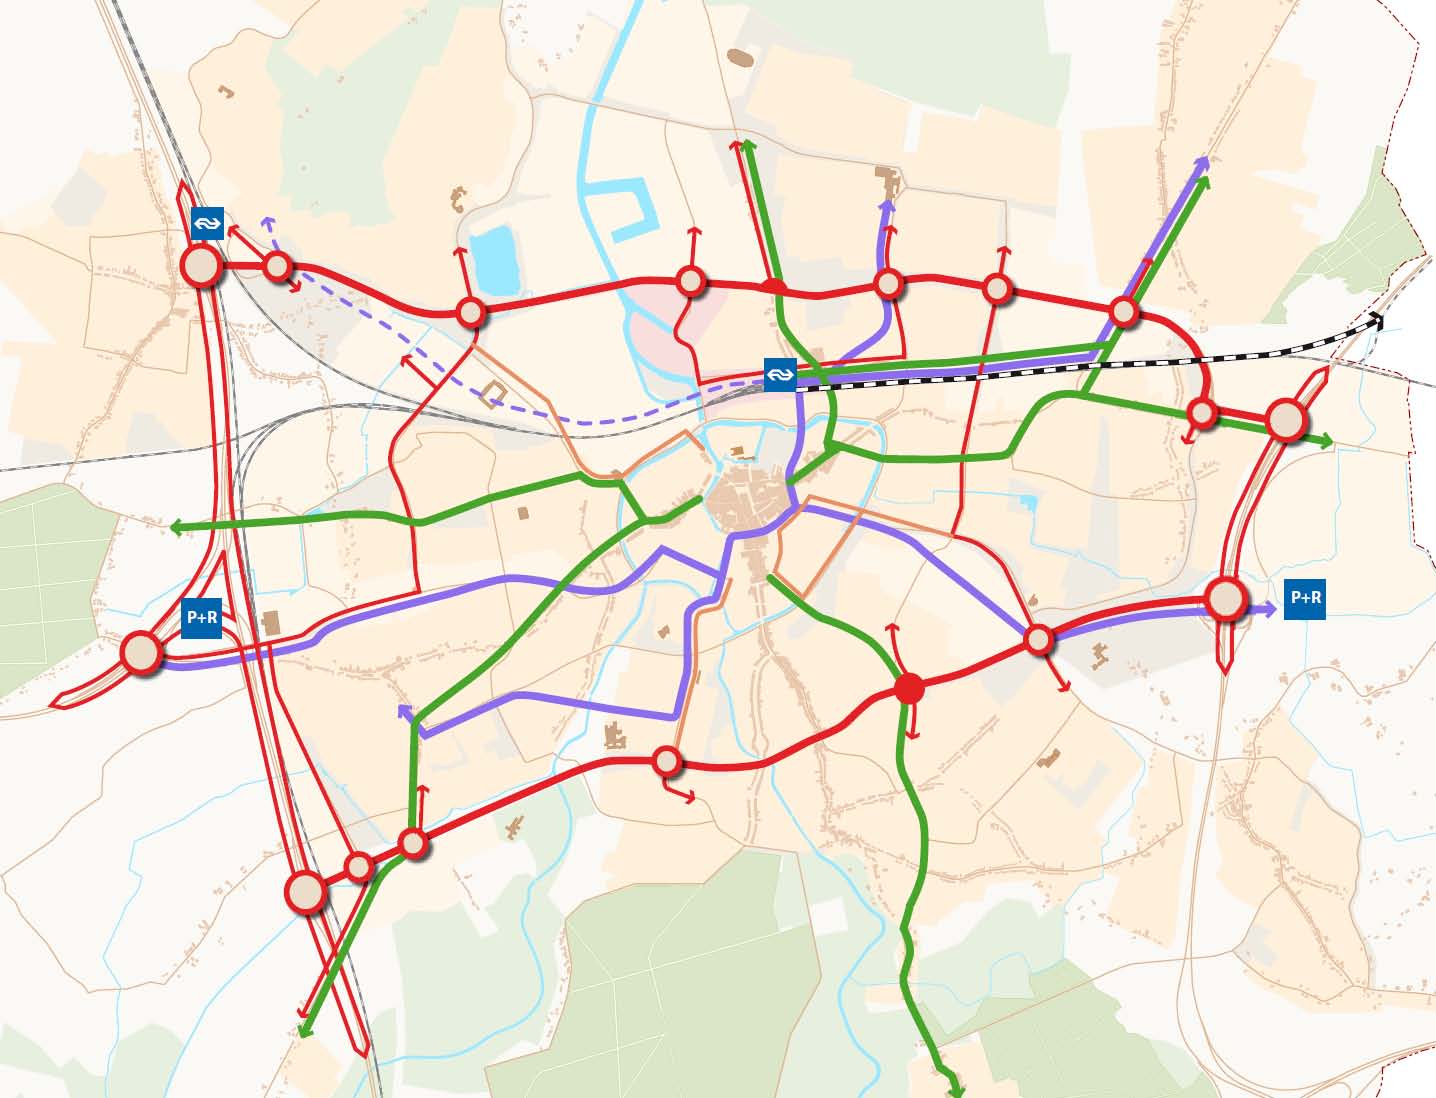 Afbeelding 39 Routestructuur MAB na 2030 (eindbeeld) Stedelijke tweedeling Binnen de MAB wordt onderscheid gemaakt tussen selectieve autobereikbaarheid en duurzame